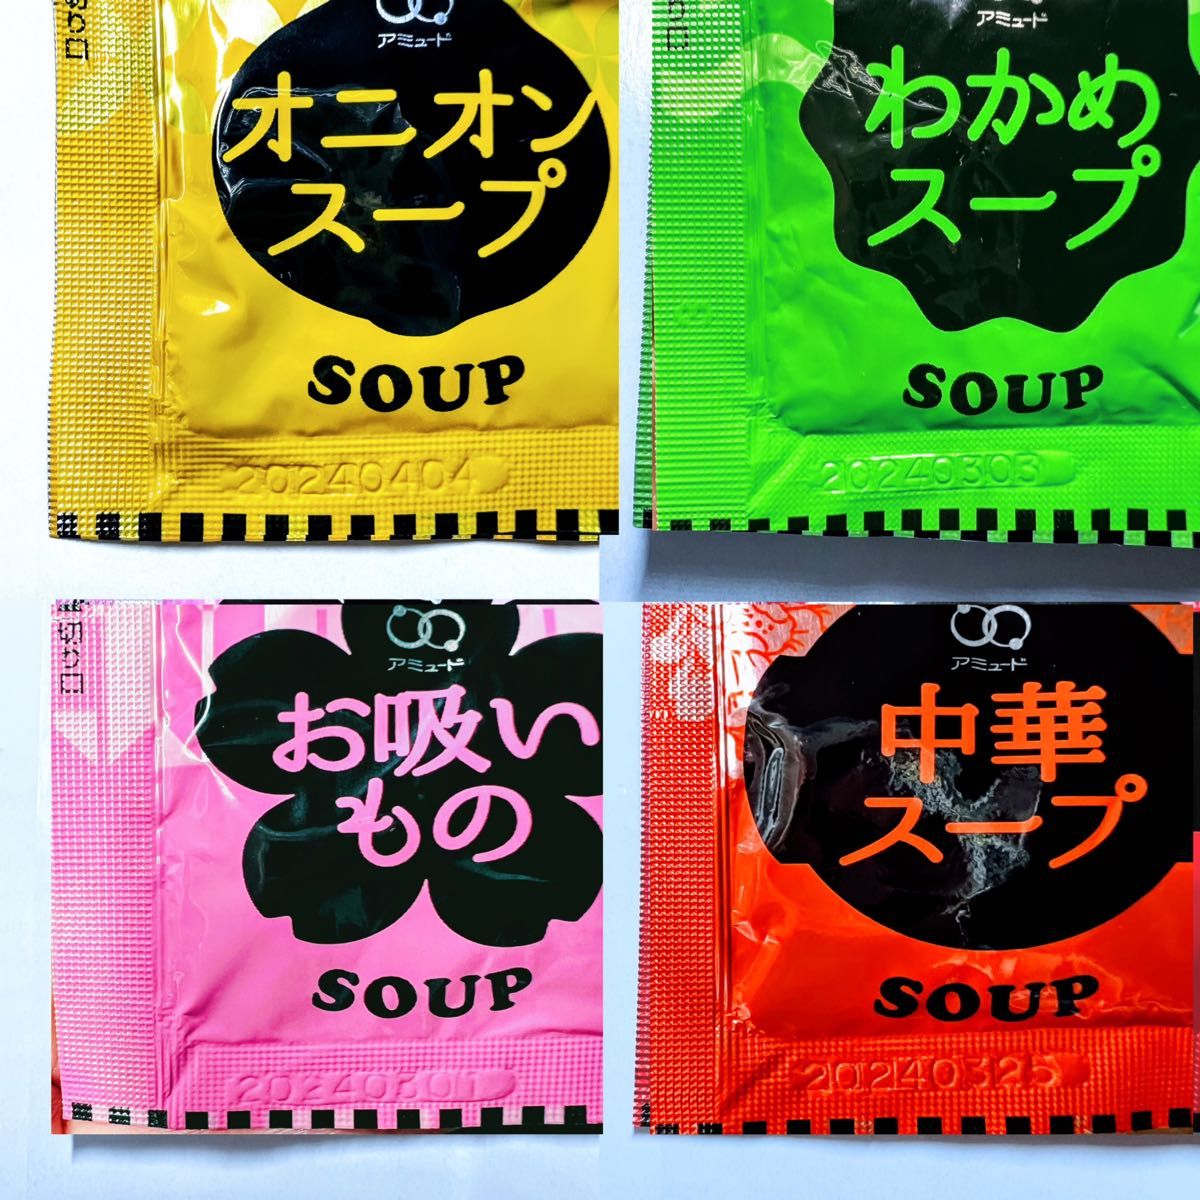 NEW売り切れる前に☆ オニオンスープ わかめスープ お吸い物 中華スープ100➕味噌汁 みそ汁100袋